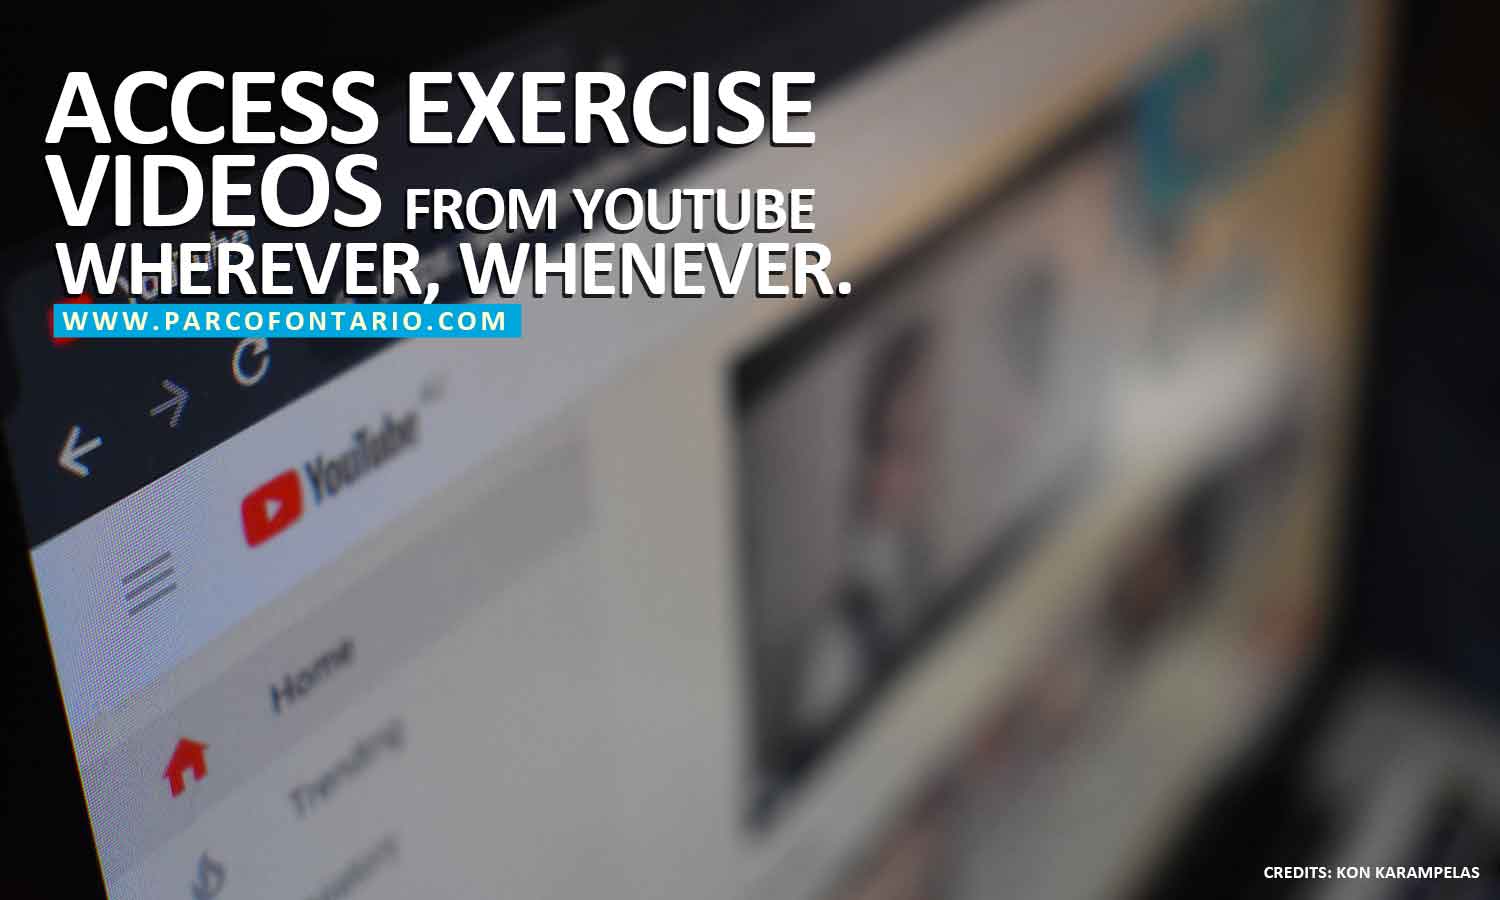 Access exercise videos